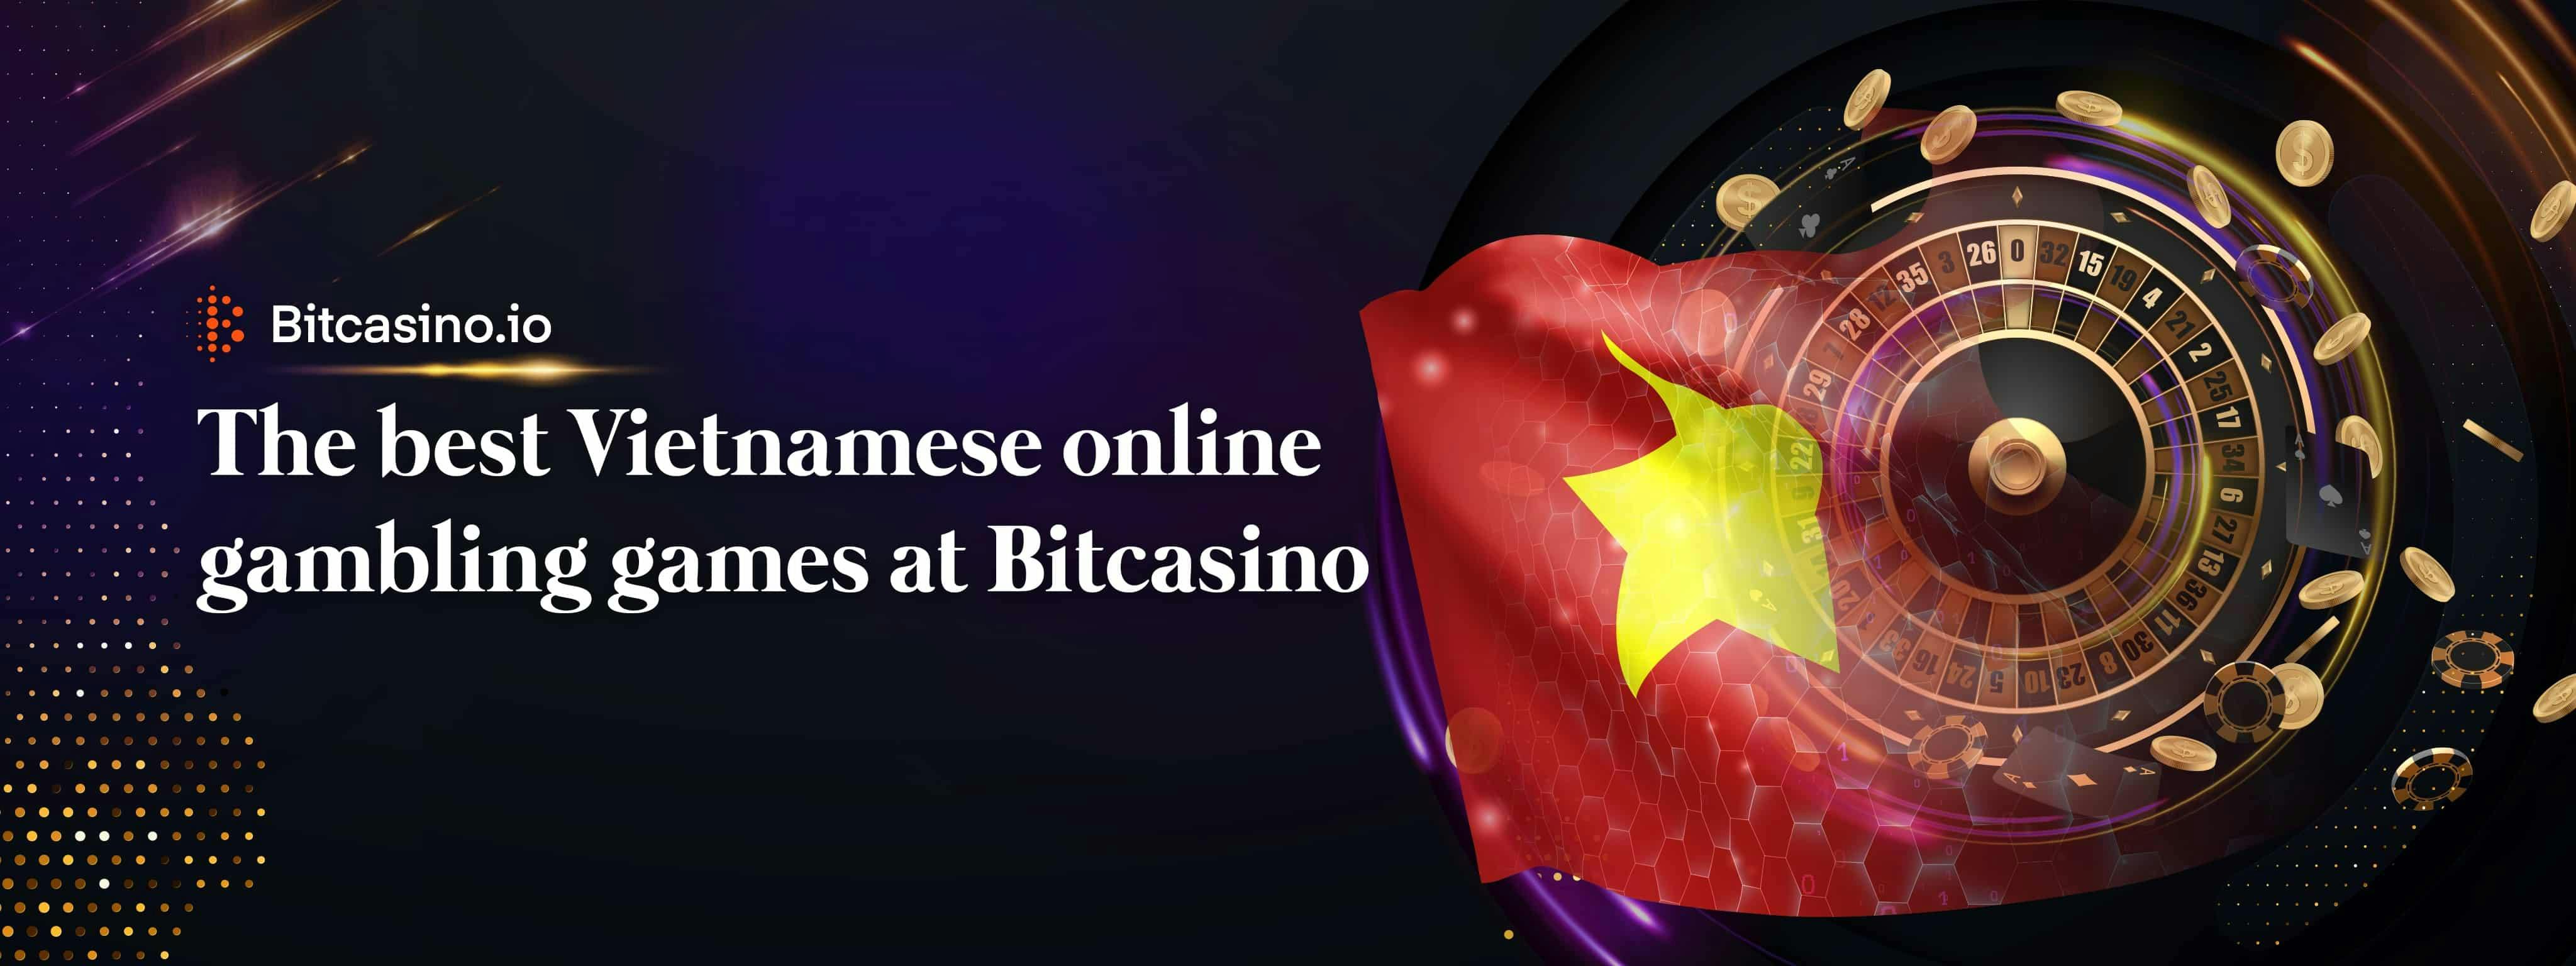 Các trò chơi cờ bạc trực tuyến hay nhất của Việt Nam tại Bitcasino